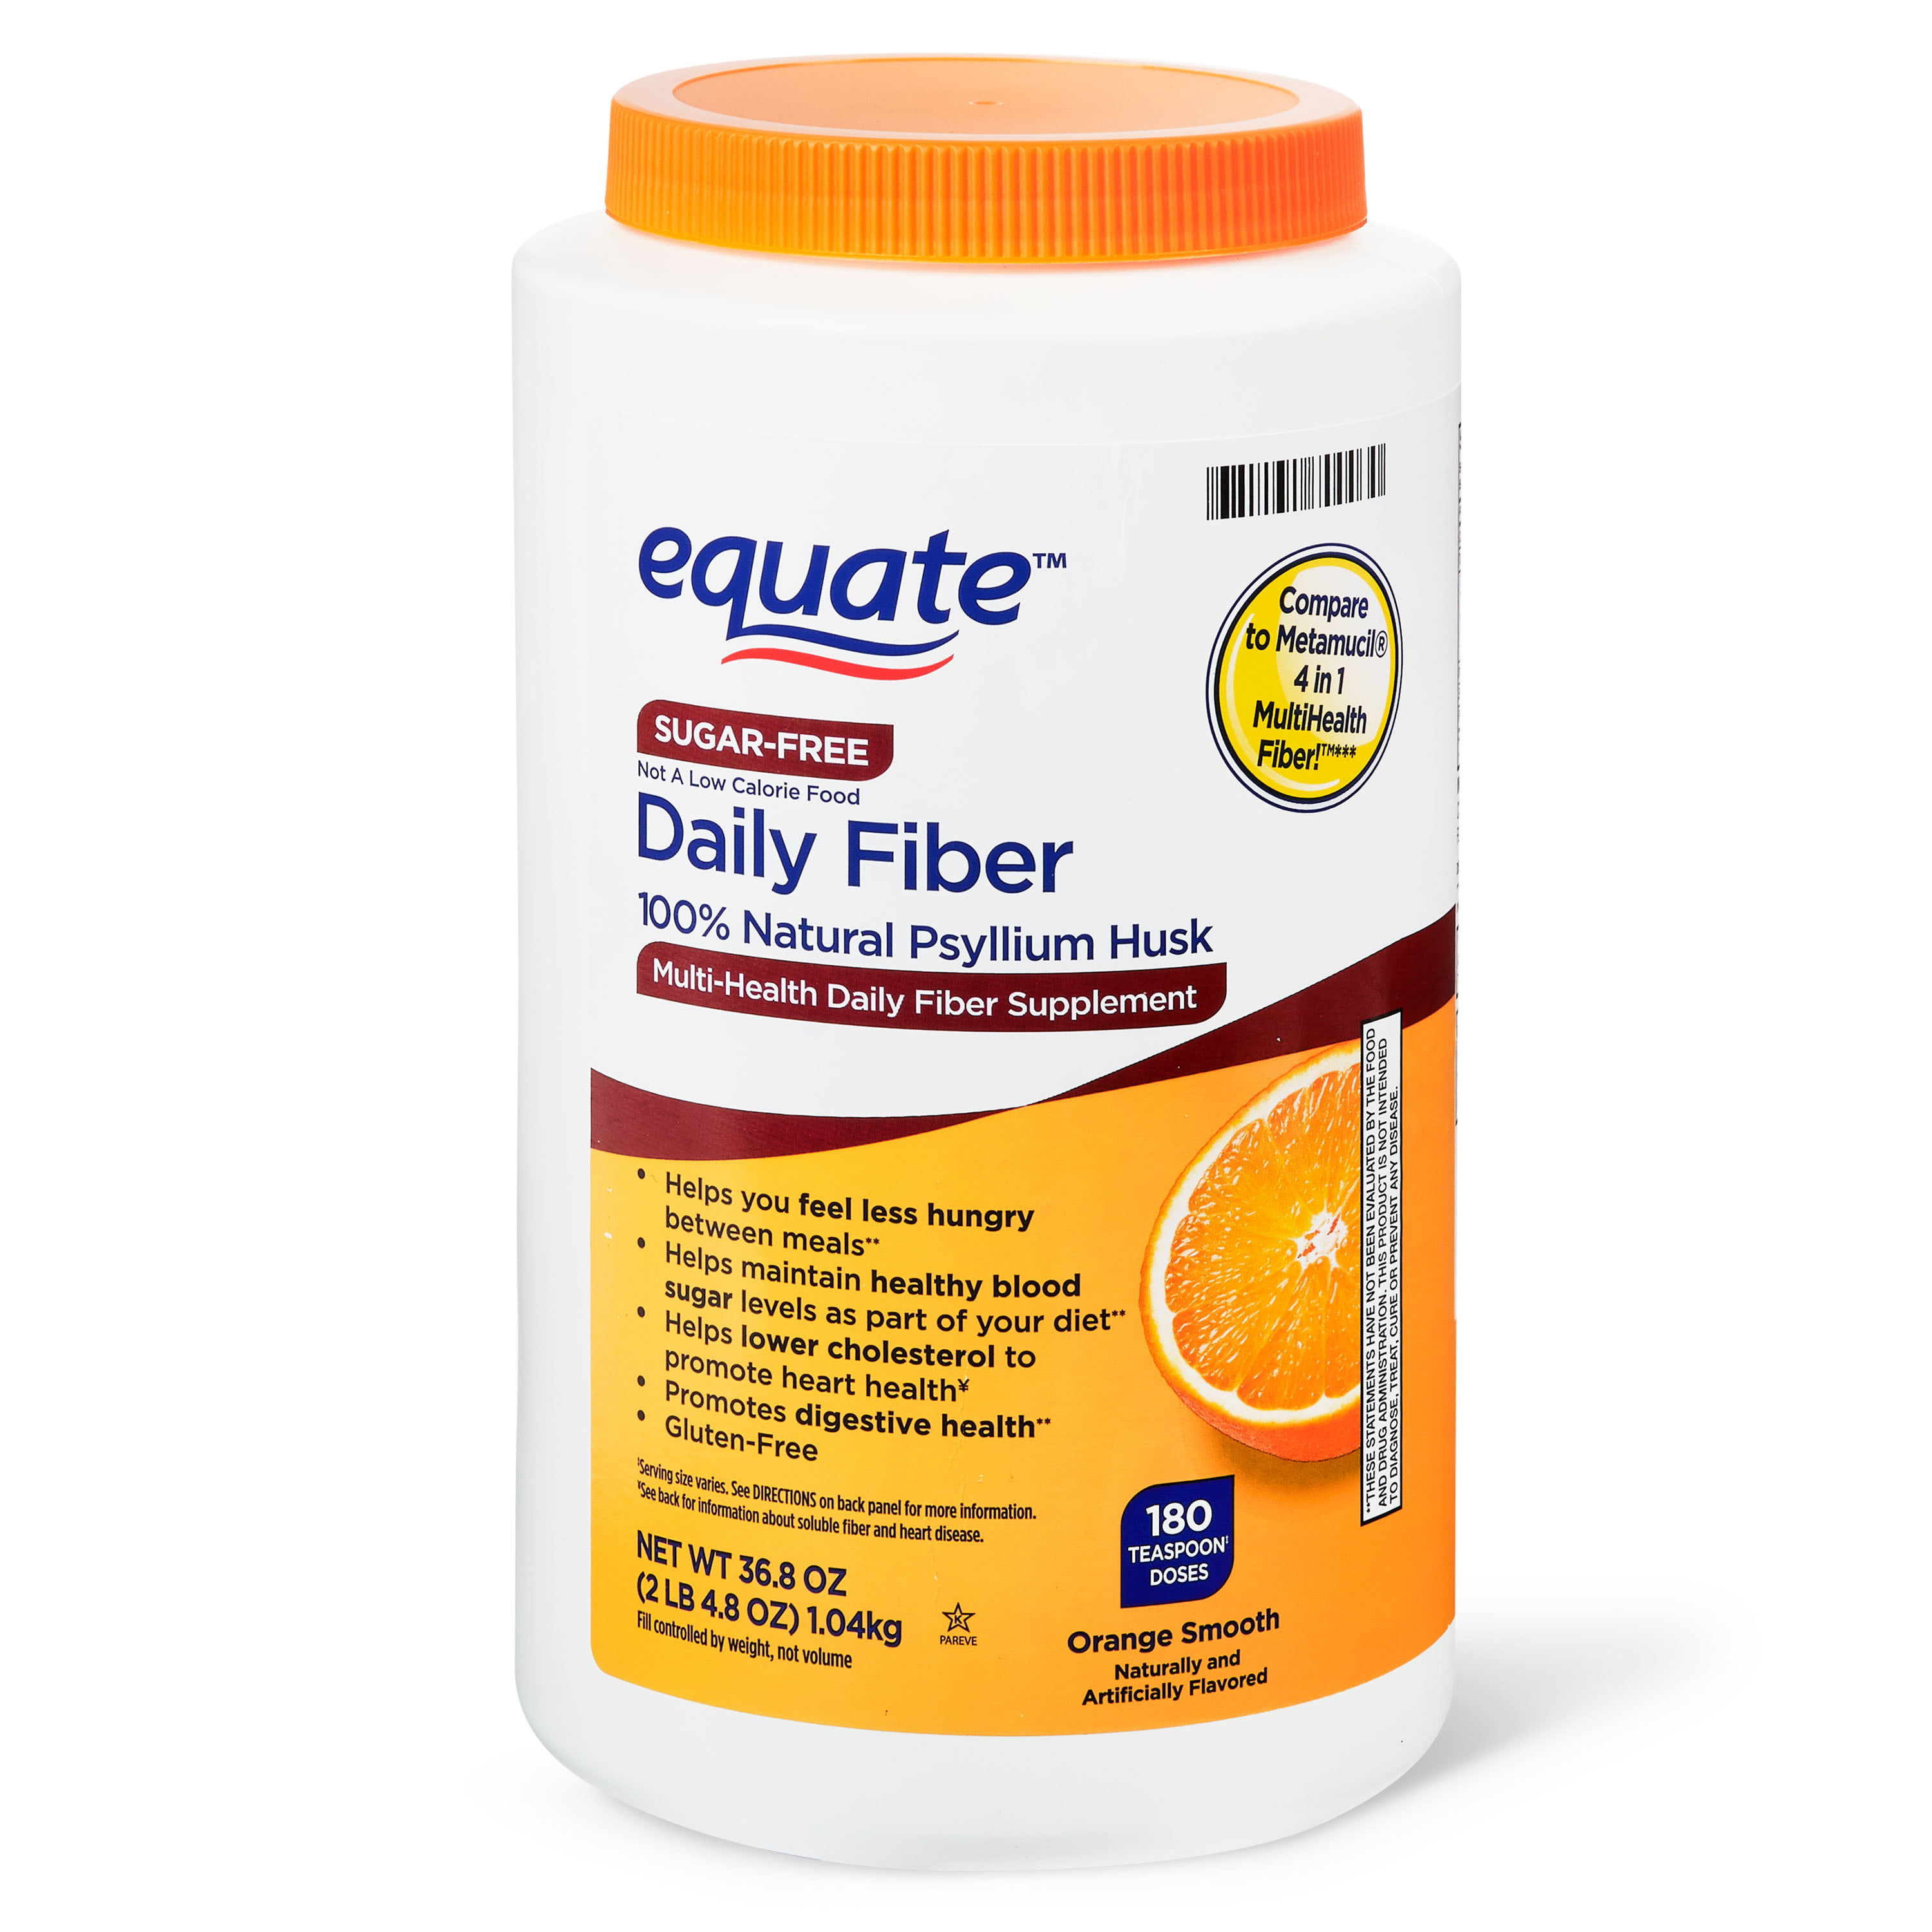 Equate Sugar-Free Daily Fiber Powder, Orange Smooth, 36.8 oz